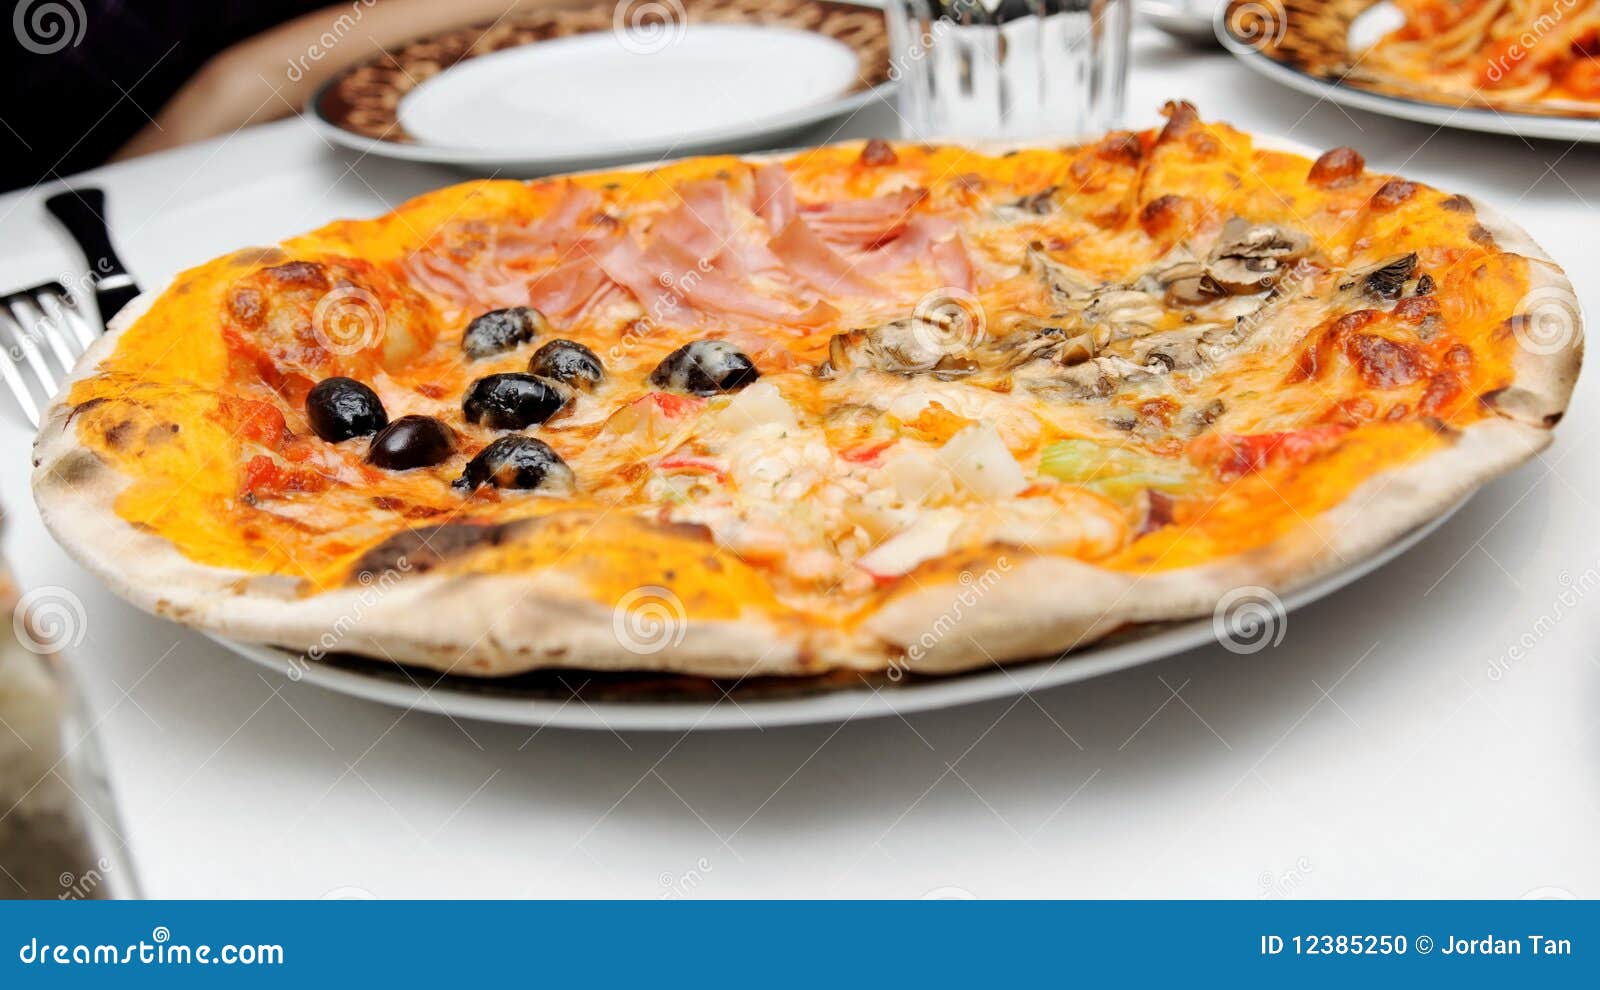 Italin Pizza mit verschiedenen Spitzen. Traditionelle italienische dünne Krustepizza mit verschiedenen Spitzen